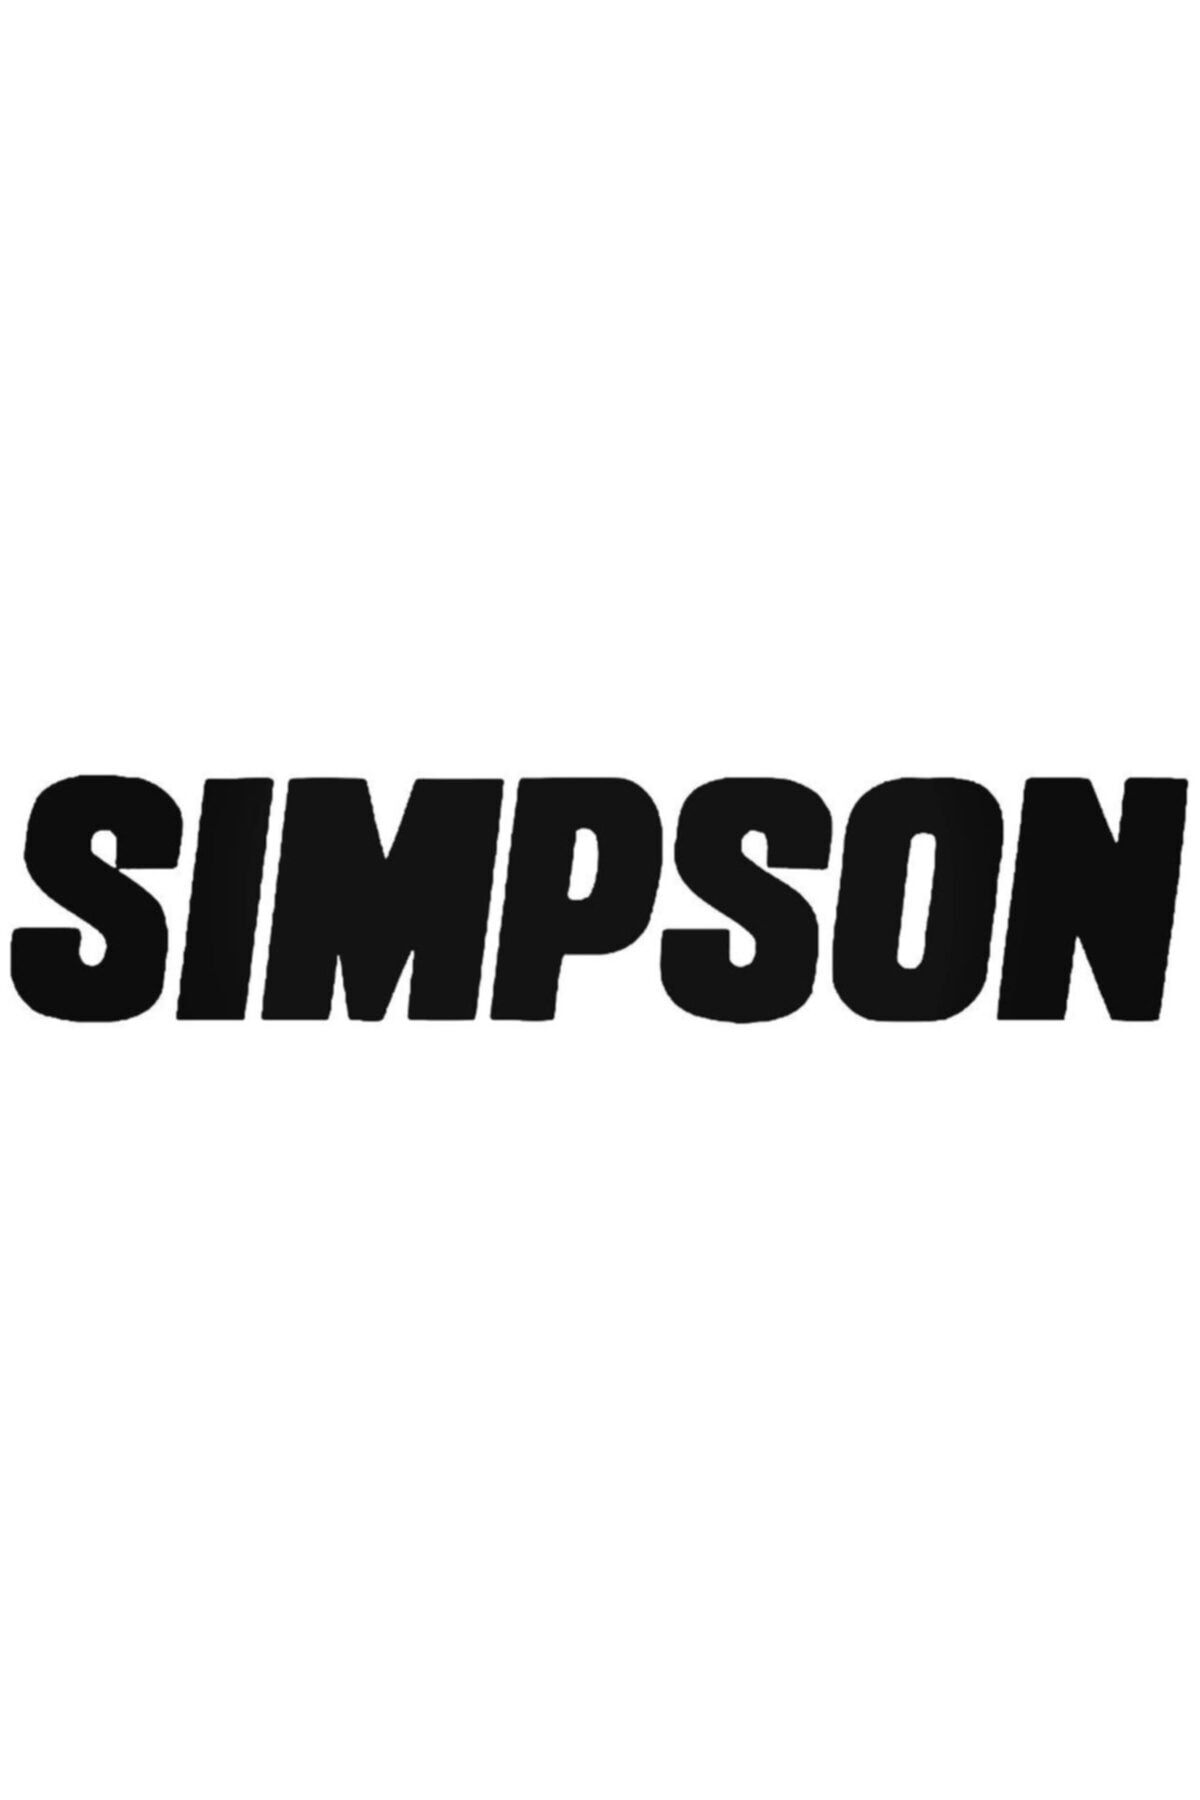 Genel Markalar Simpson Logo 1 Sticker Araba Oto Arma Duvar Çıkartma 20 cm